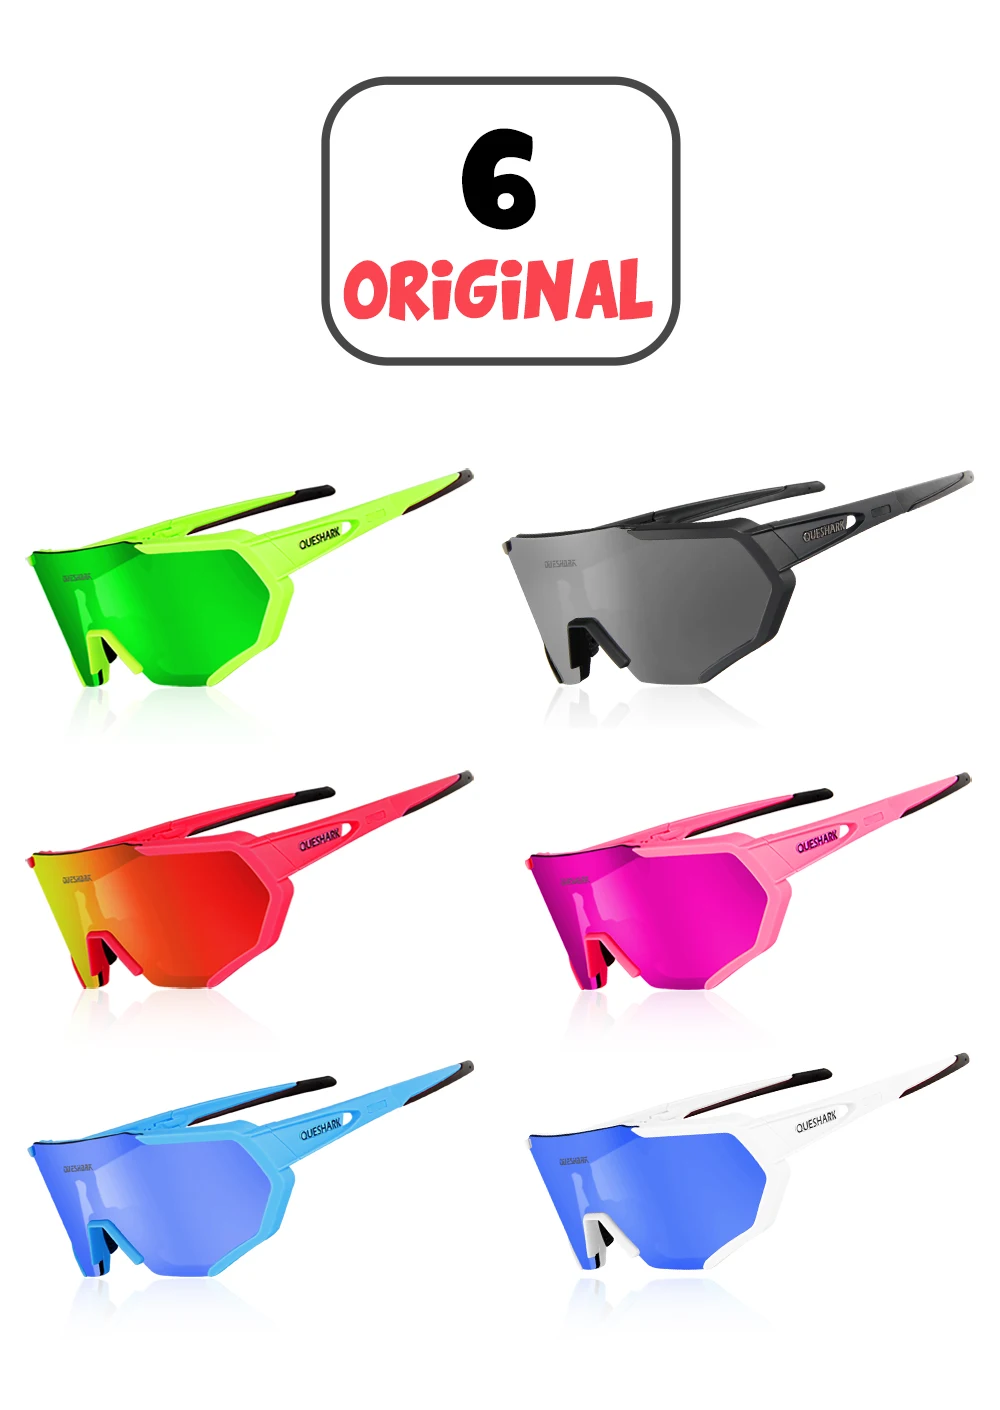 Аксессуары для Queshark QE42, модель велосипедных очков, близорукость, оправа, цветные линзы, Экстра, фотохромные линзы